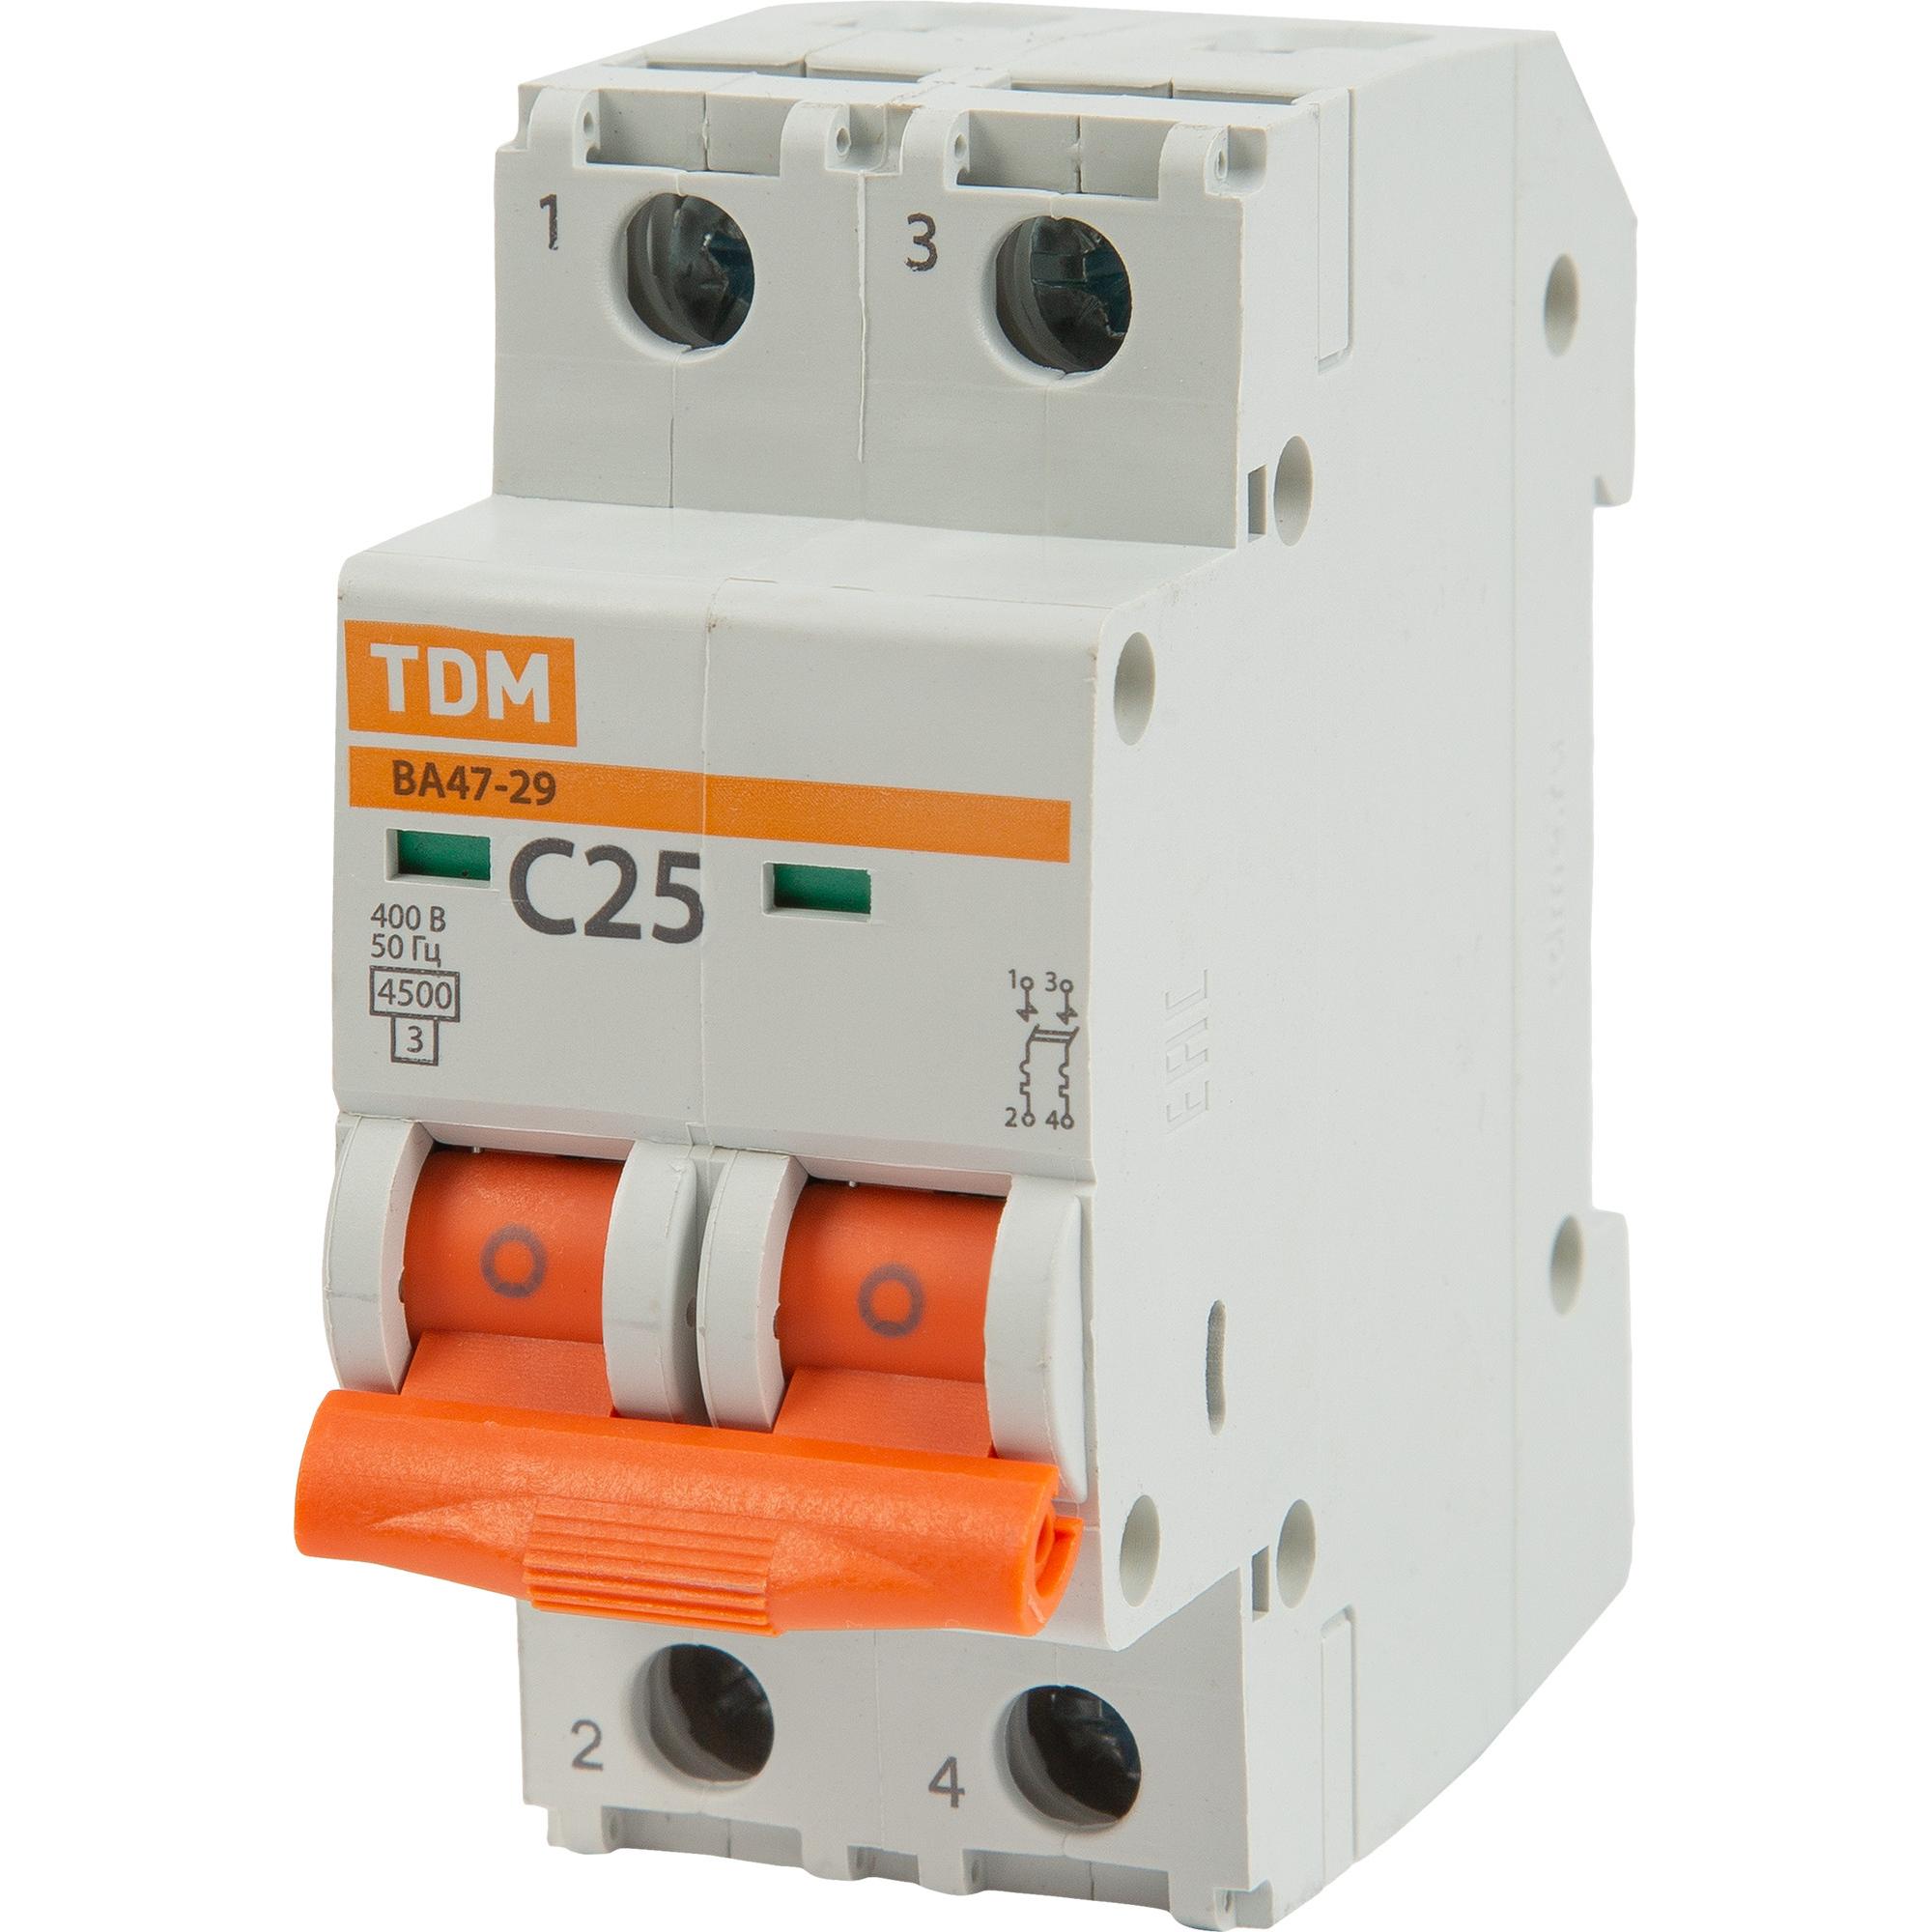 Выключатель автоматический ва47 29 1 16а. Автоматический выключатель TDM c25. Автомат TDM sq0206-0099. Автомат TDM sq0206-0032. Автомат TDM sq0206-0188.